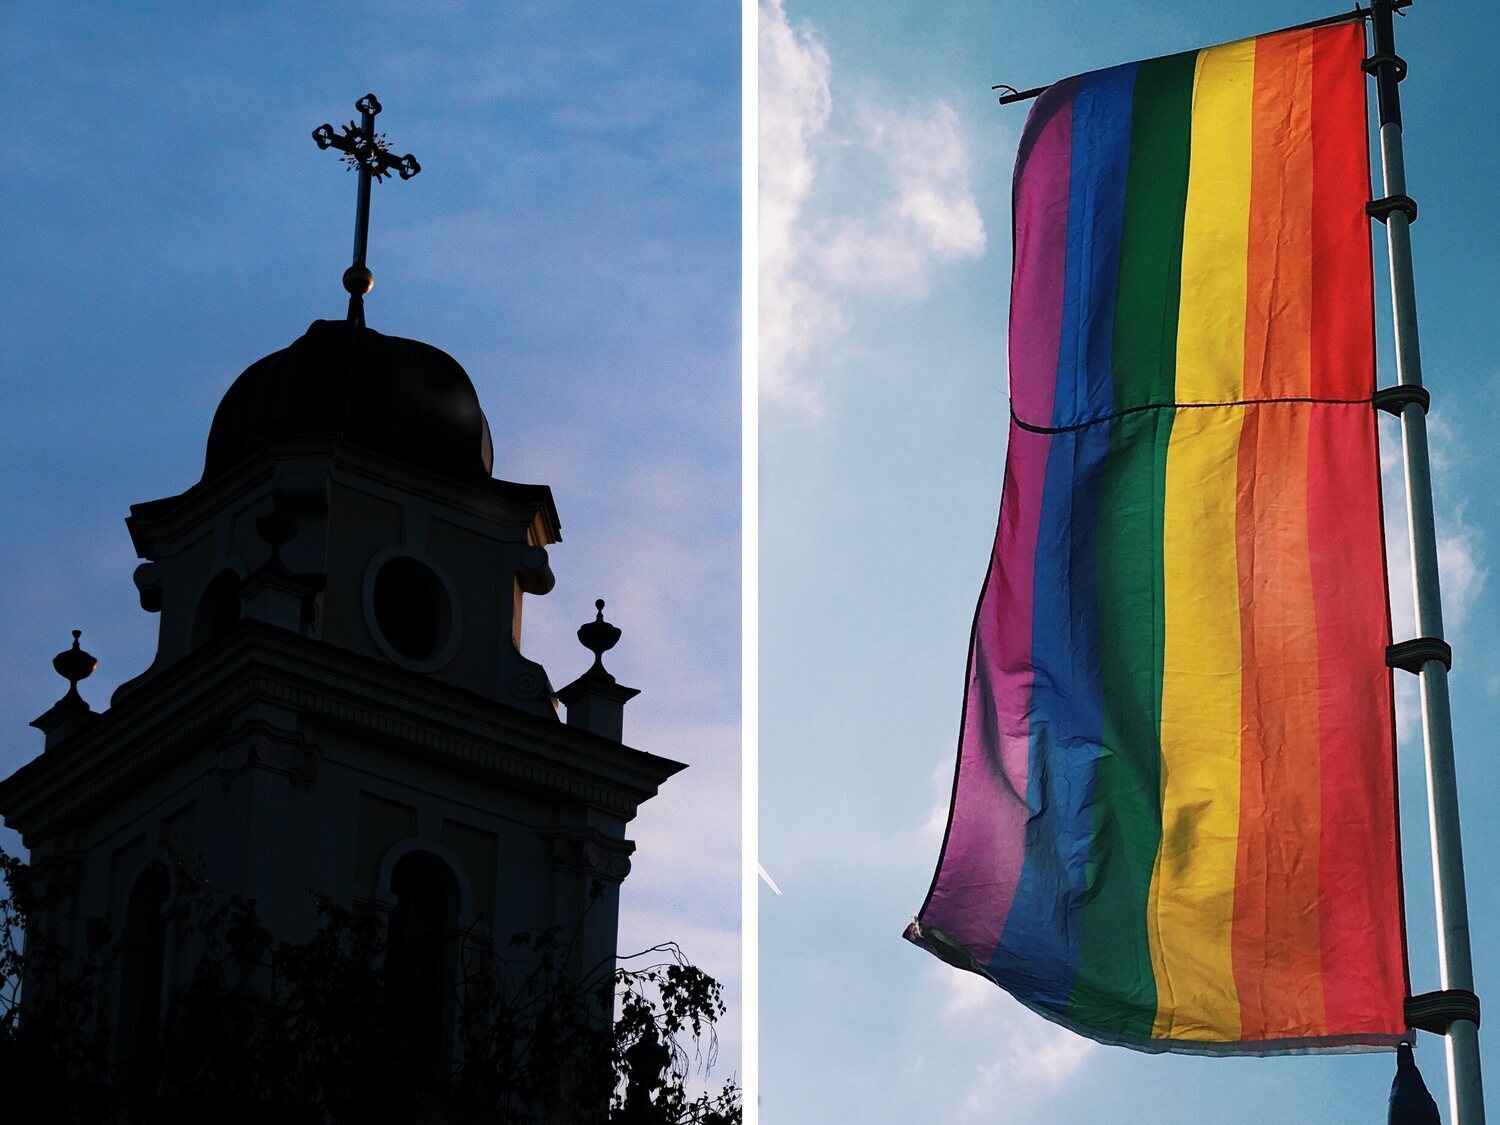 La iglesia alemana celebra una bendición multitudinaria de parejas del mismo sexo ante la catedral de Colonia